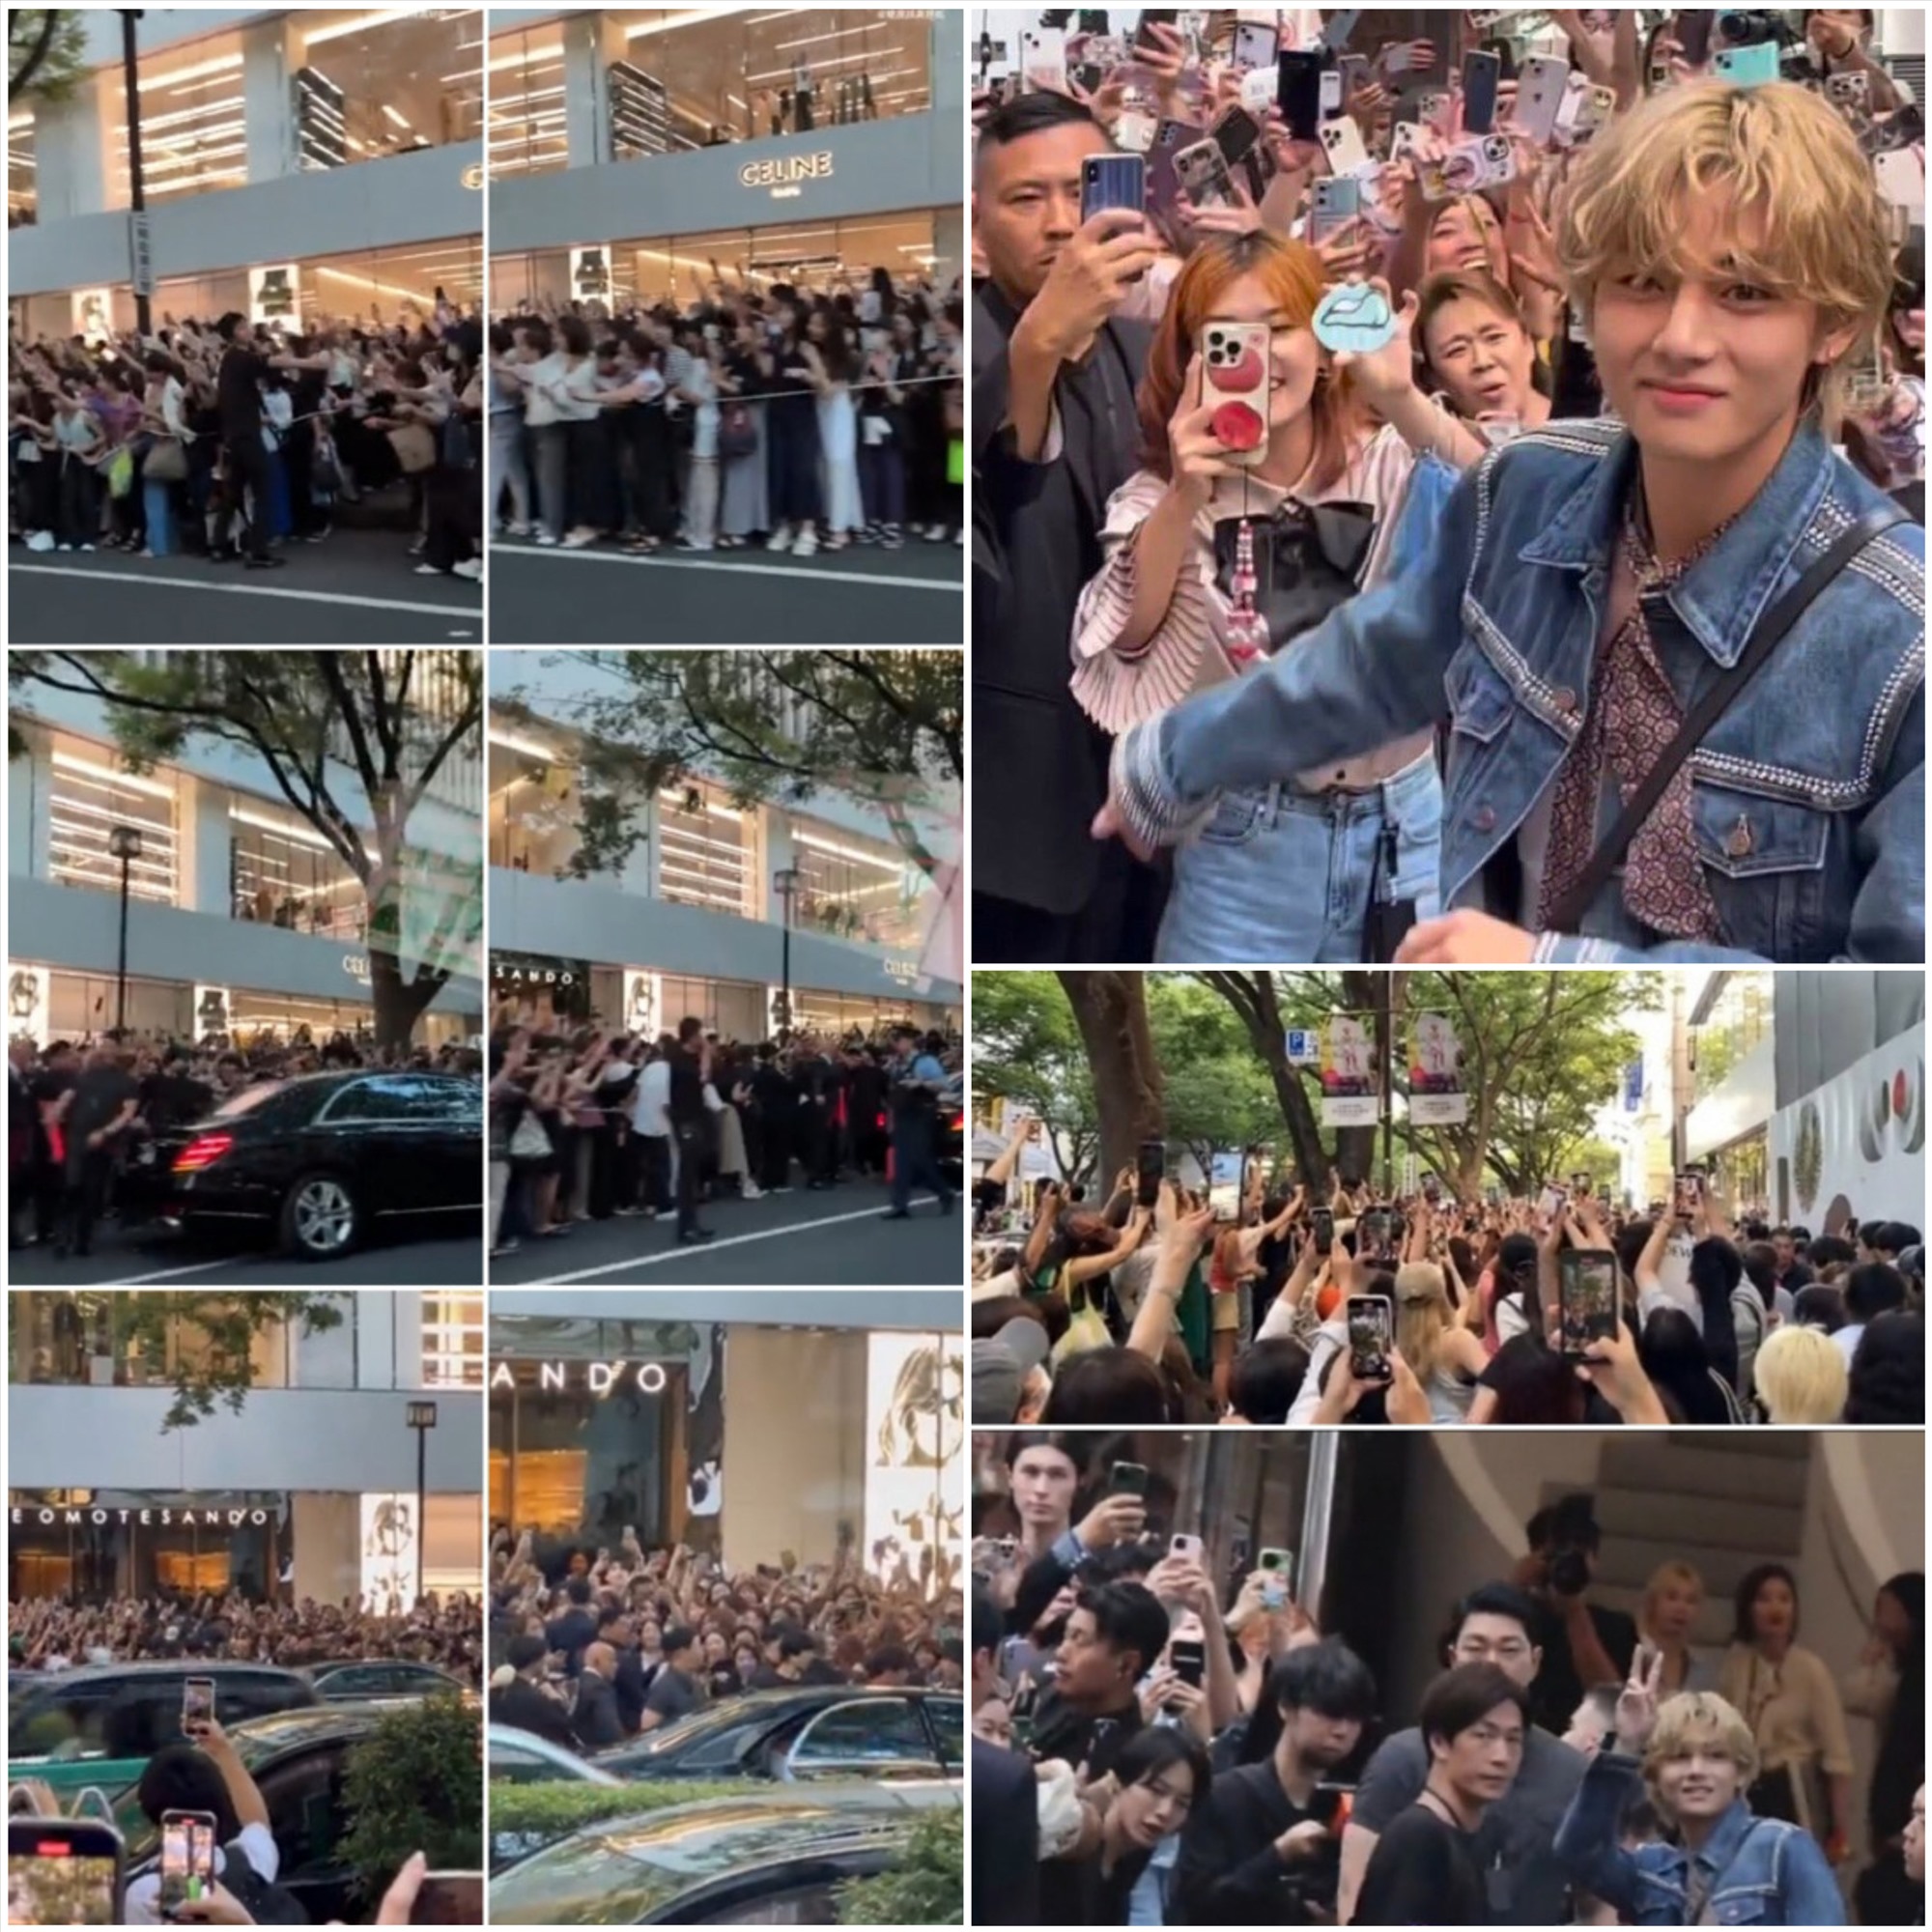 Đám đông người hâm mộ chào đón V BTS tại sự kiện. Ảnh: Star News